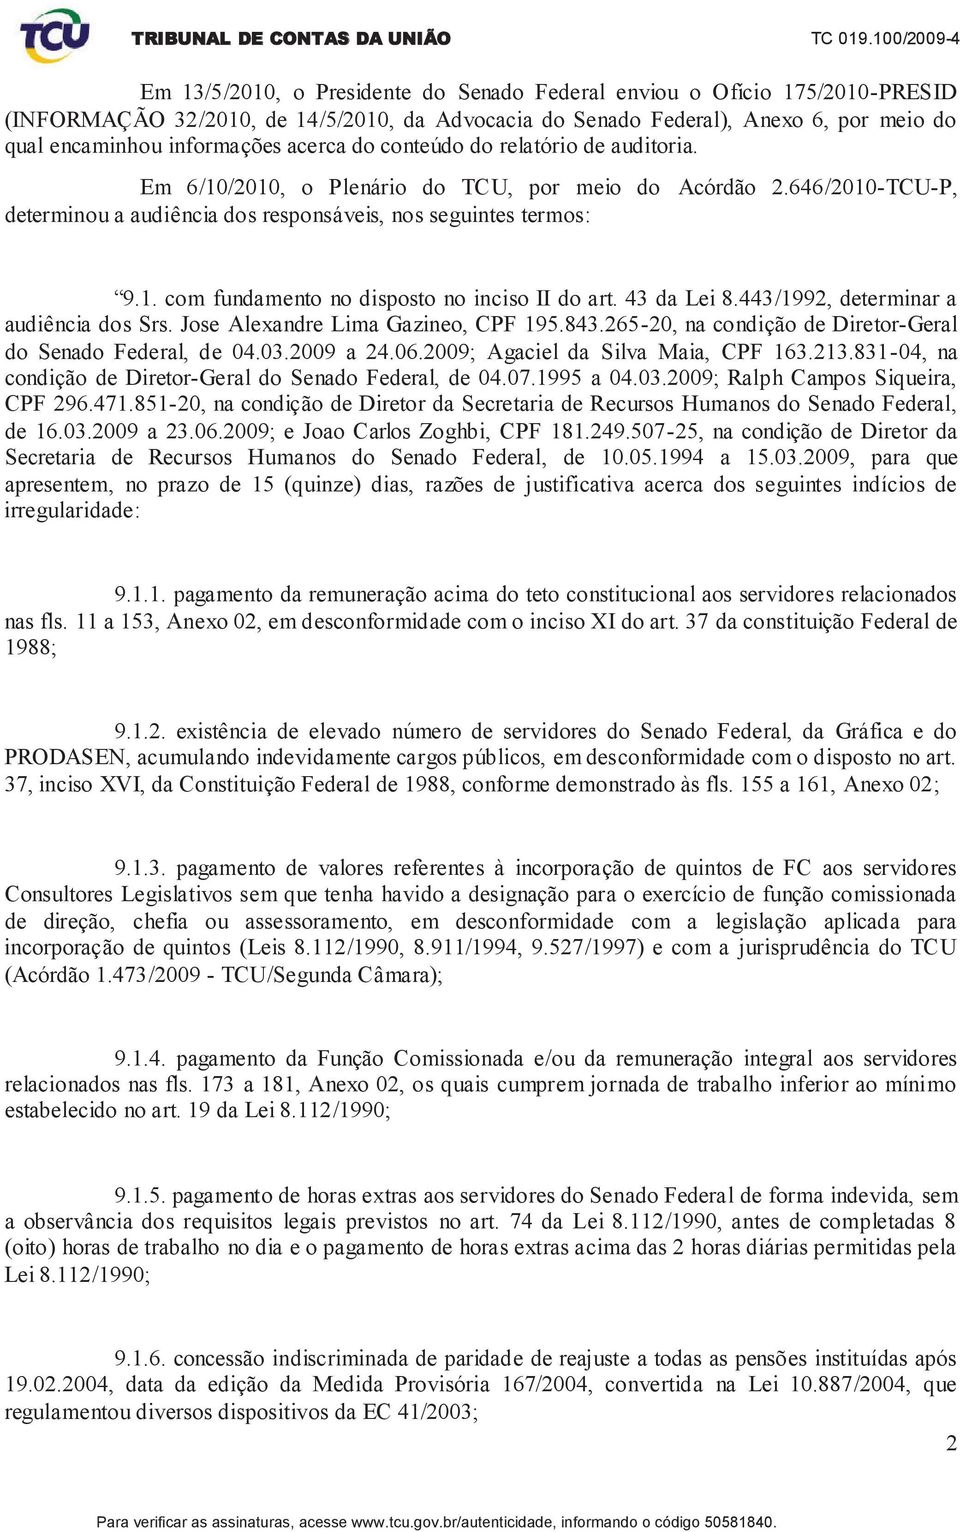 43 da Lei 8.443/1992, determinar a audiência dos Srs. Jose Alexandre Lima Gazineo, CPF 195.843.265-20, na condição de Diretor-Geral do Senado Federal, de 04.03.2009 a 24.06.